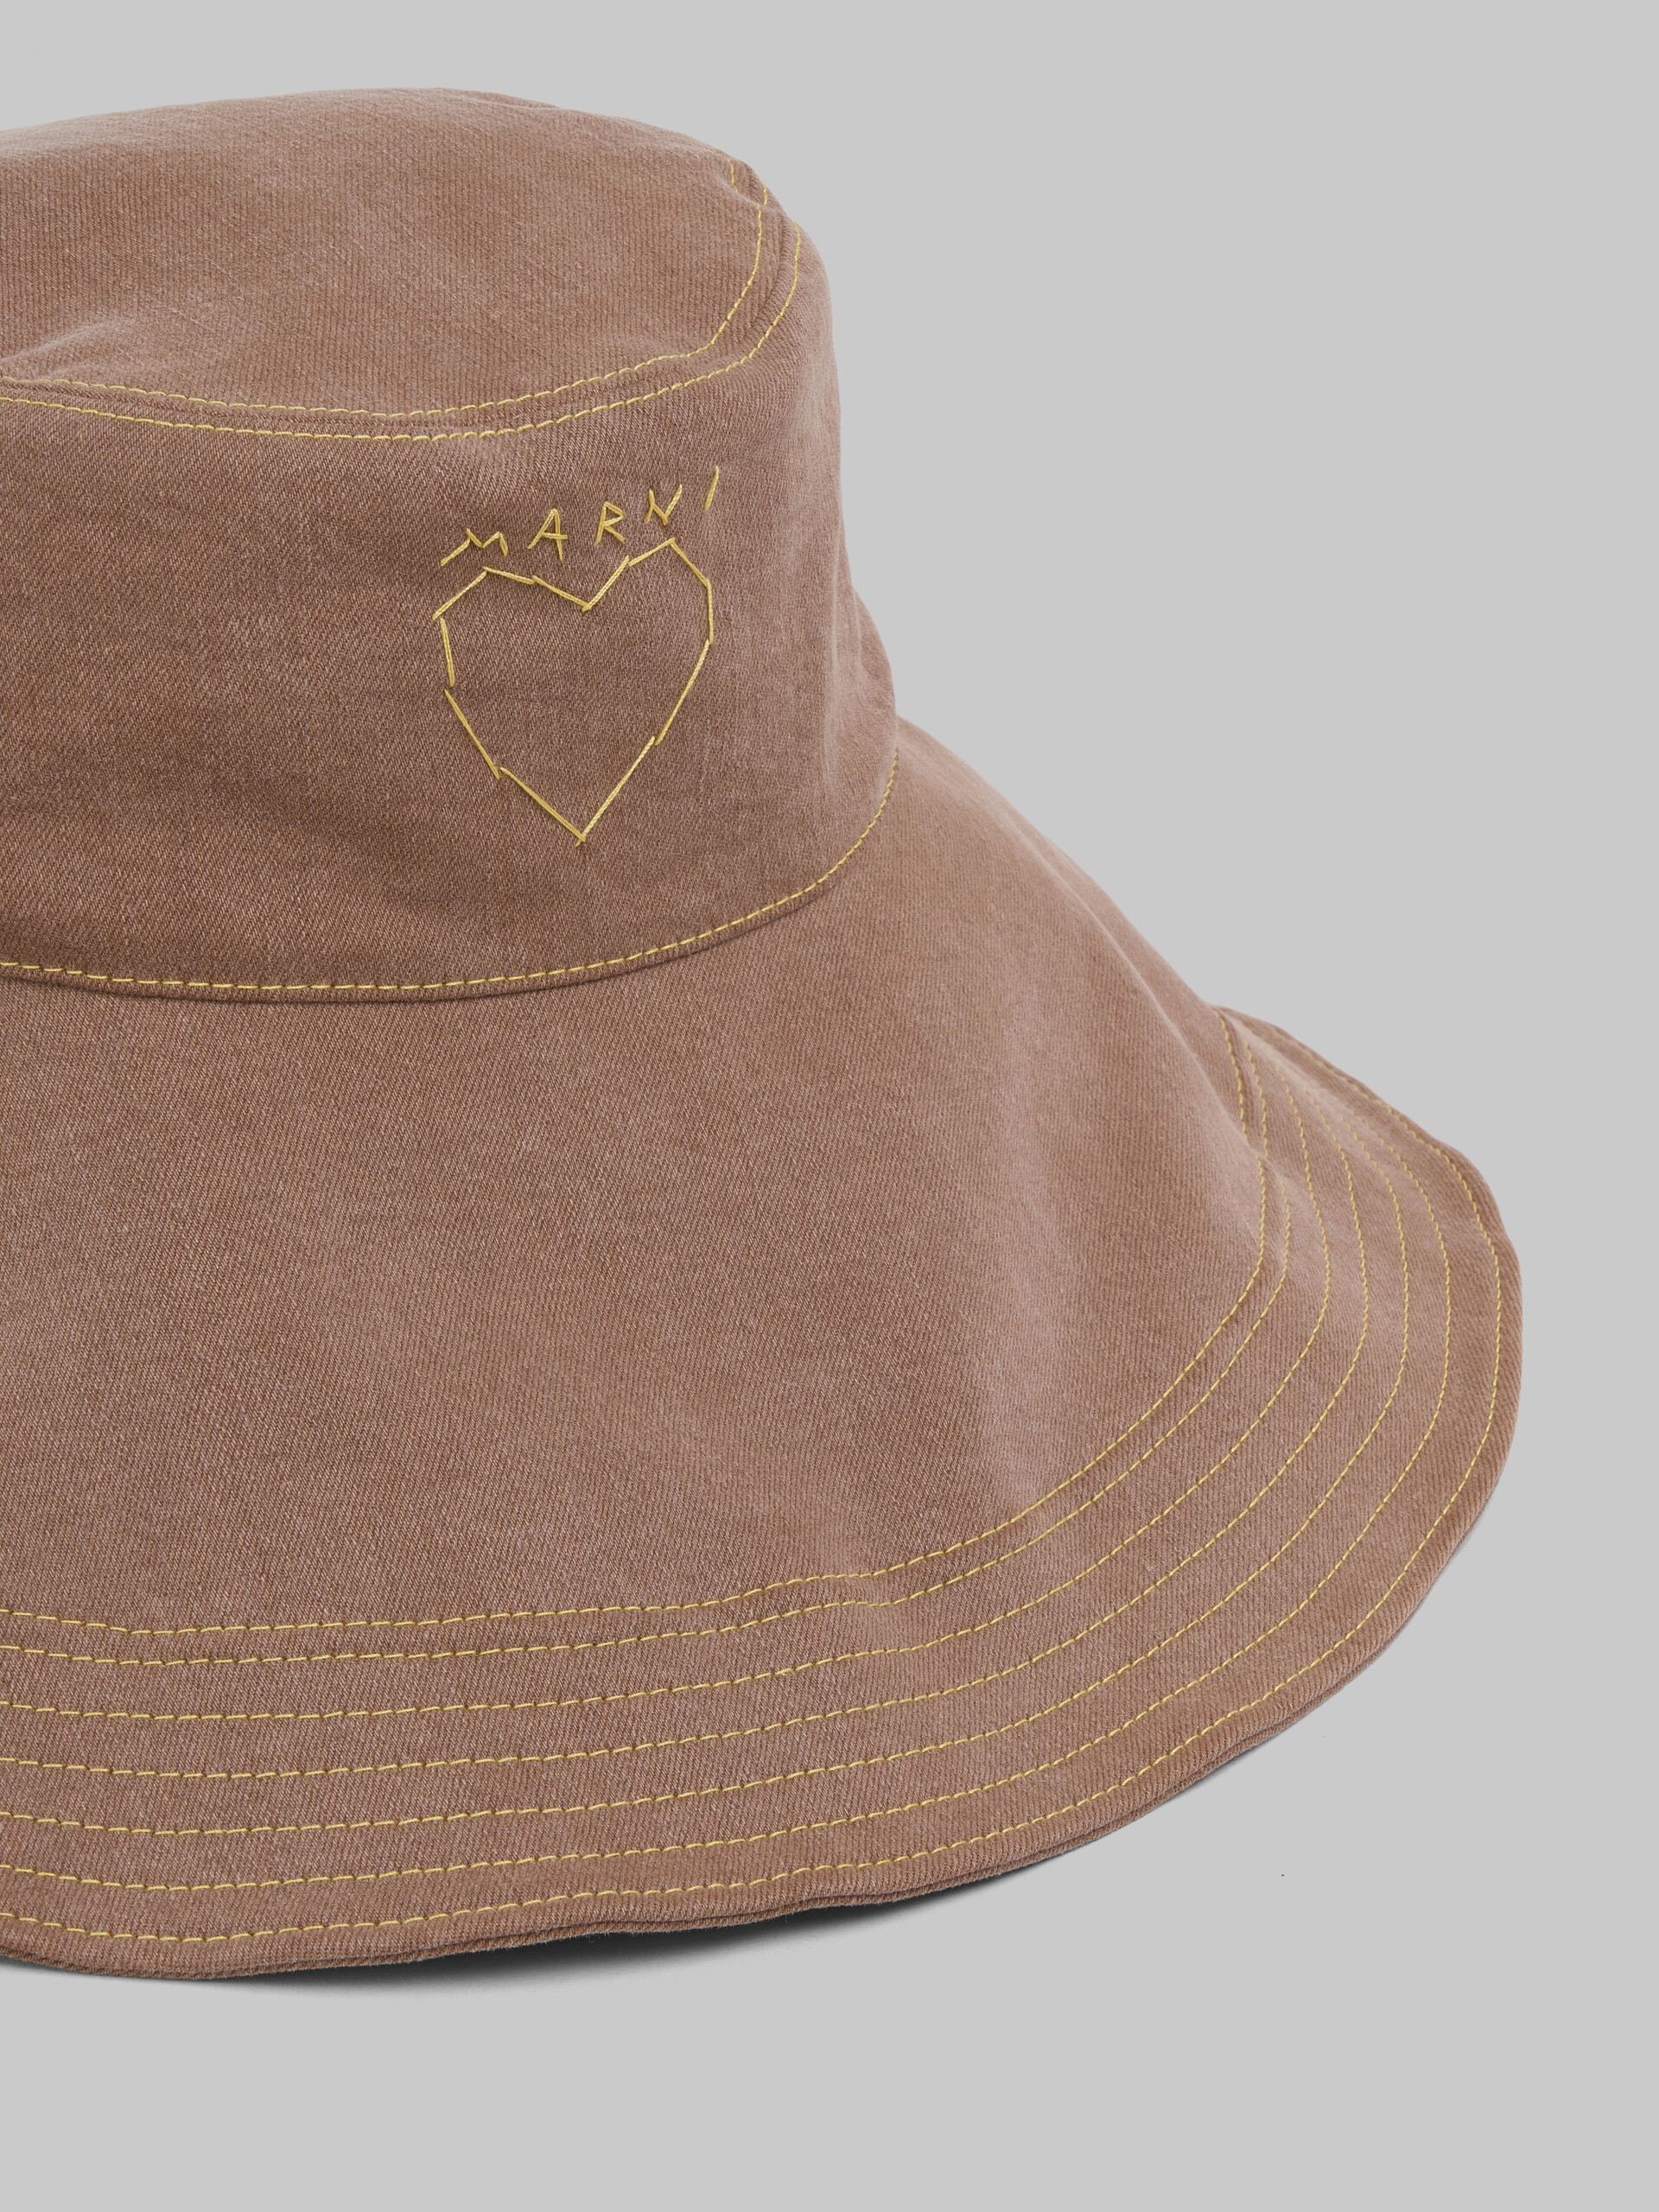 Brauner Hut aus Bio-Denim - Hüte - Image 4